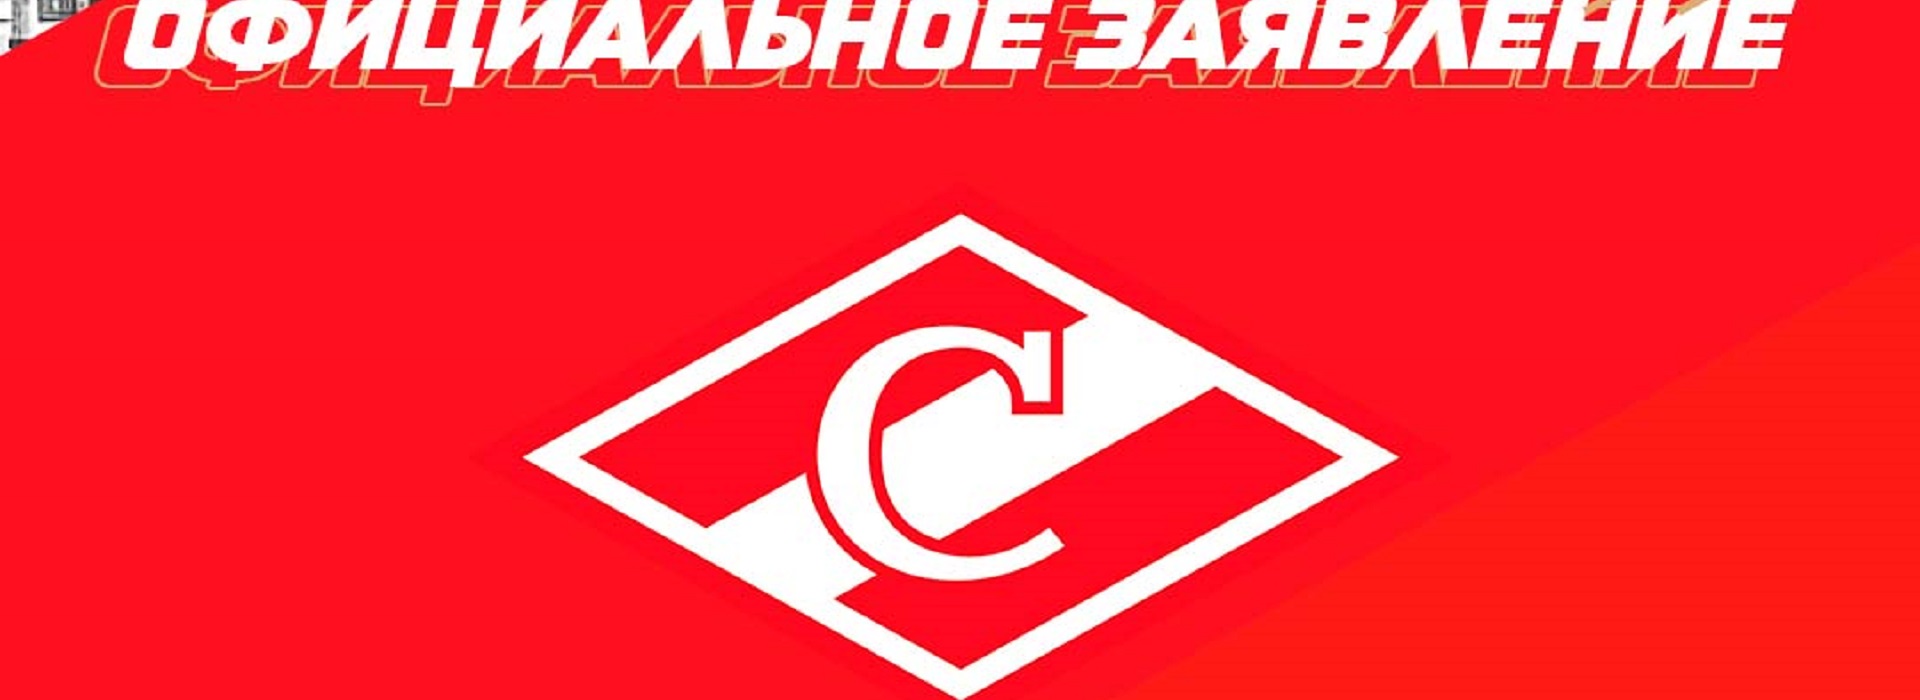 Официальное заявление ХК «Спартак» Москва